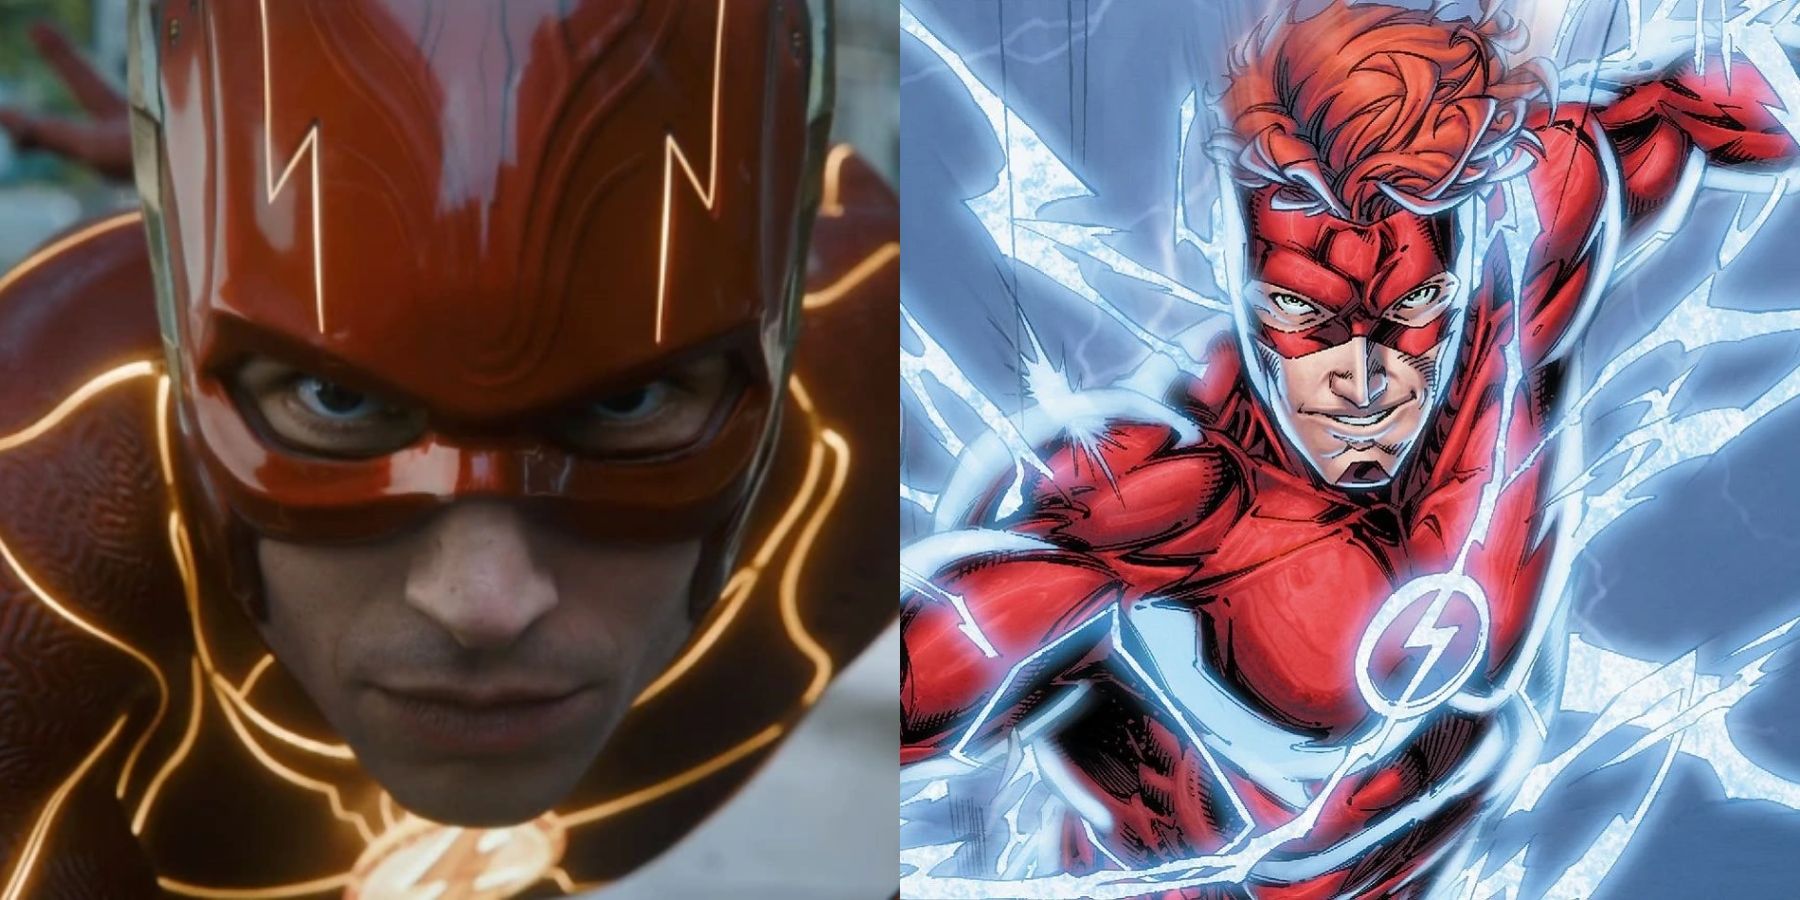 El flash de DCU debería ser Wally West en lugar de Barry Allen
 CINEINFO12